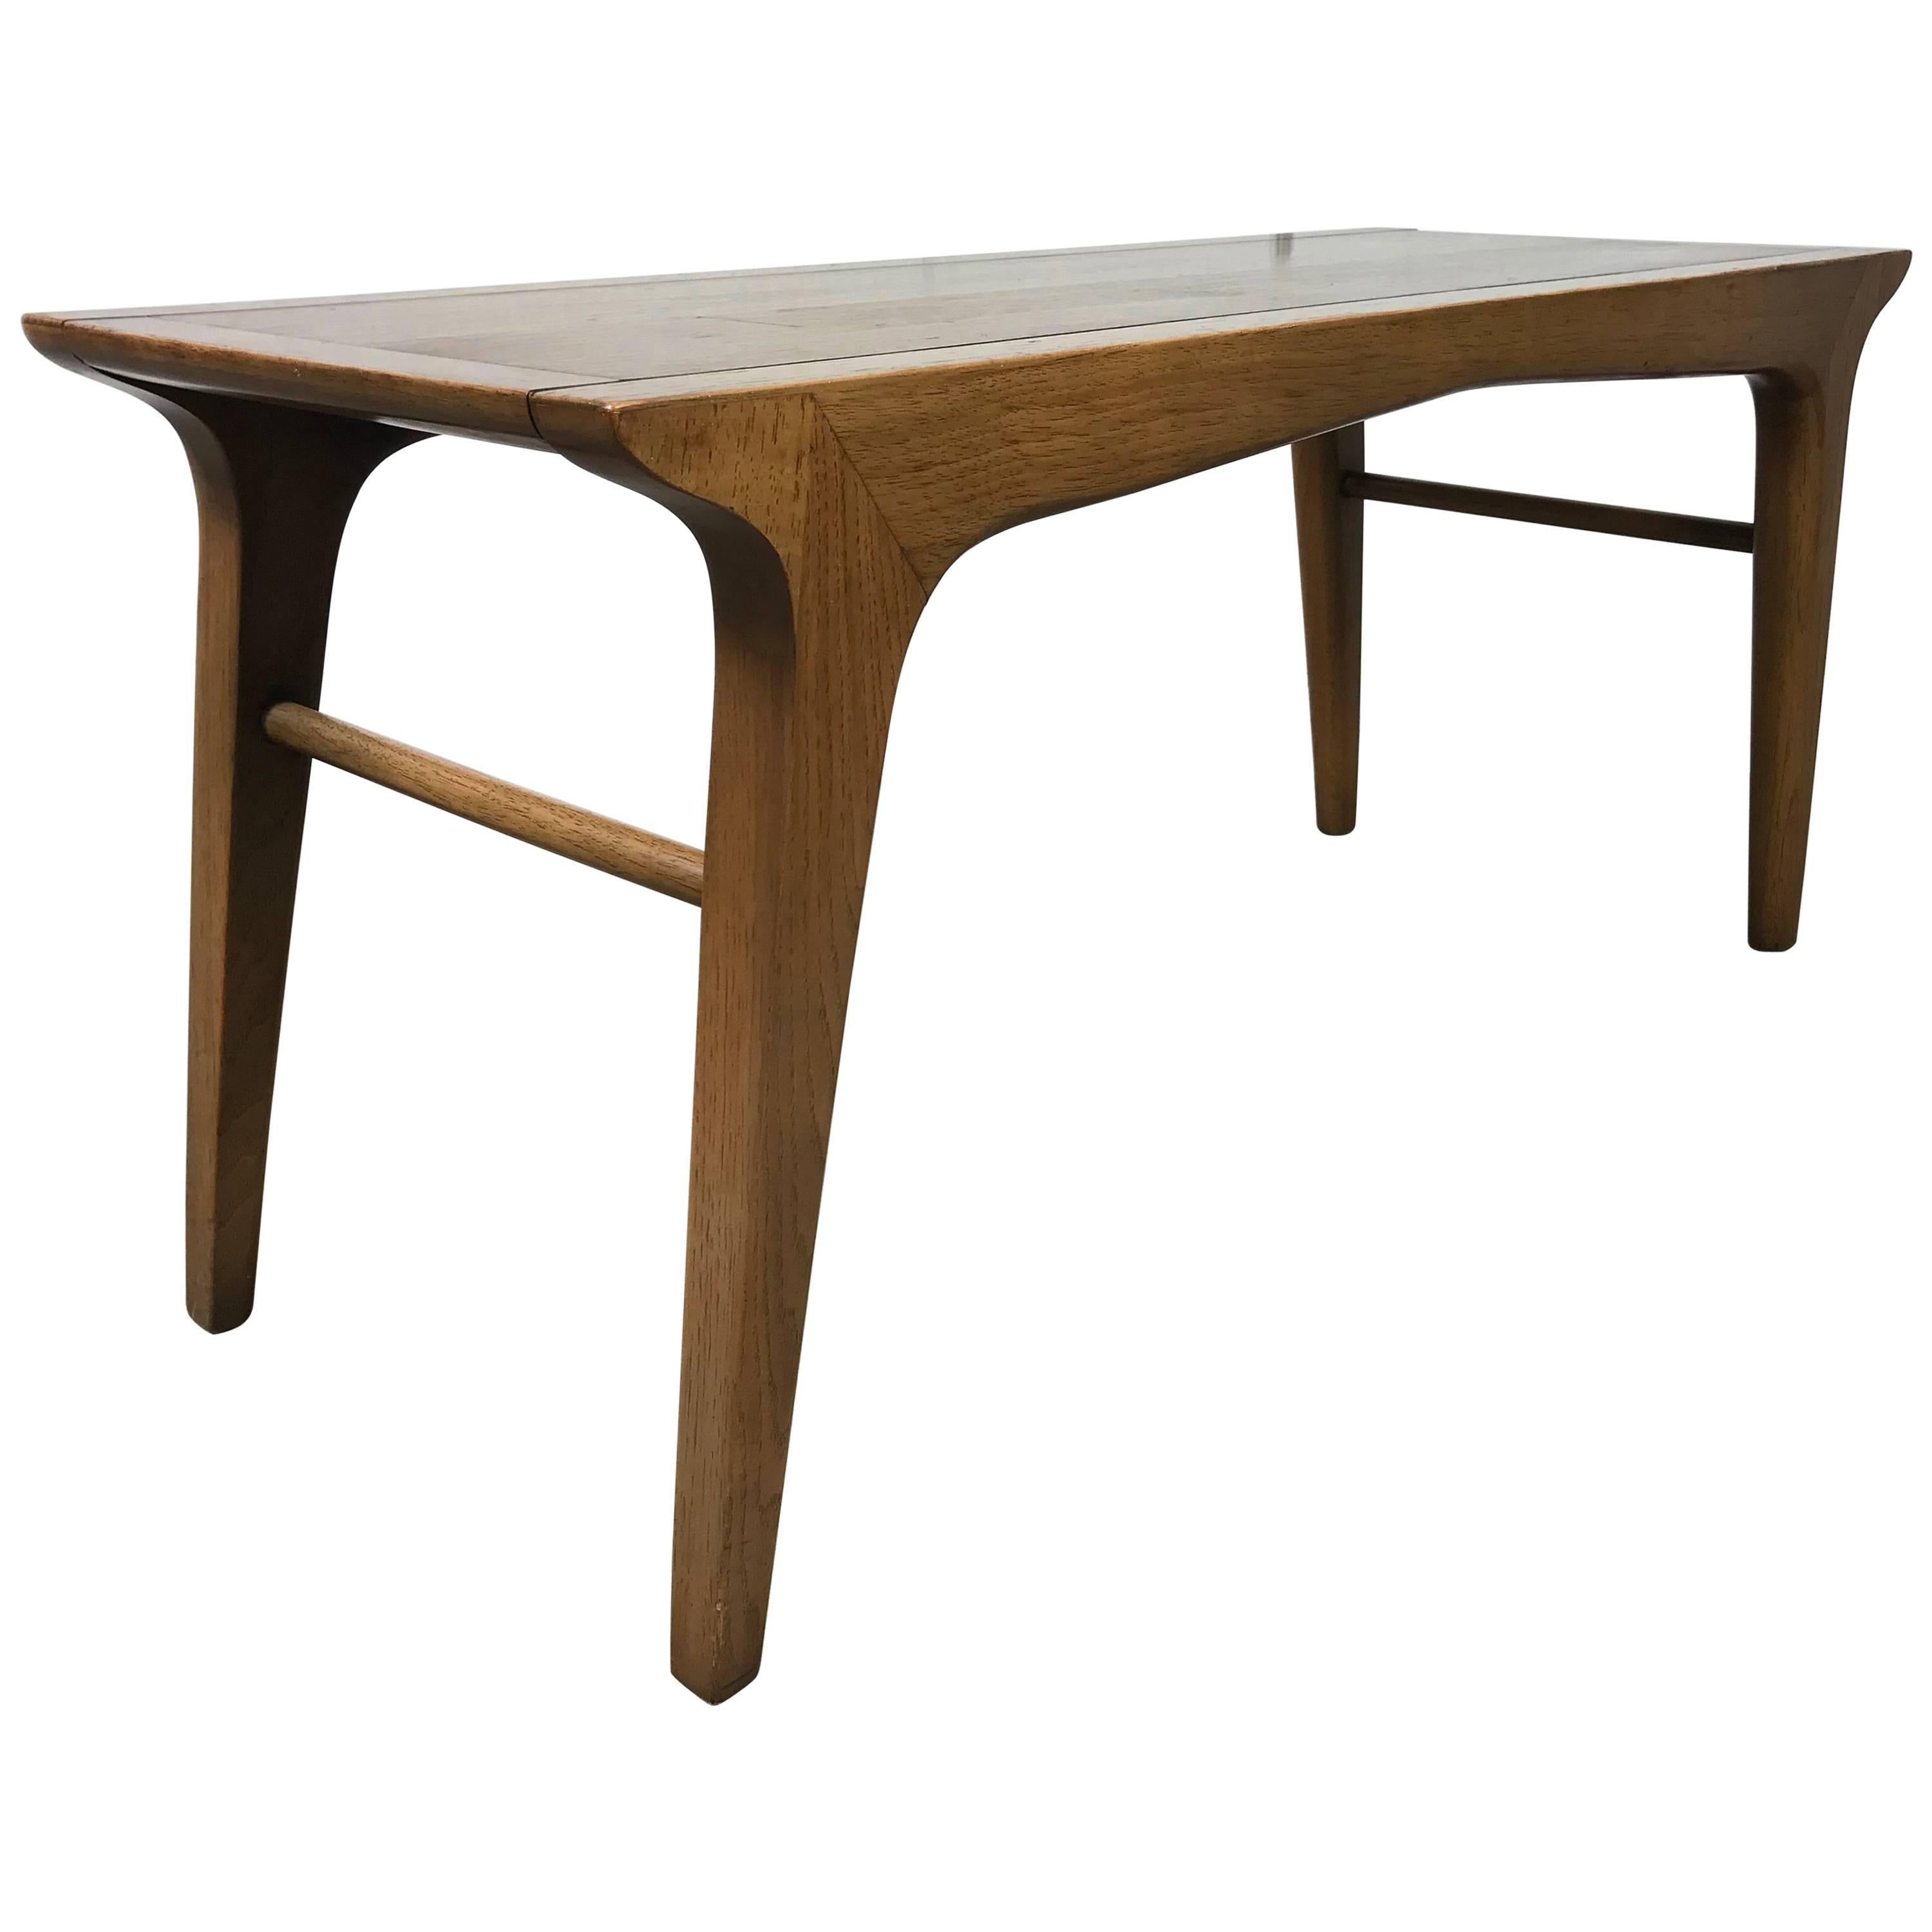 Elusive Modernist Bench or Table by John Van Koert for Drexel